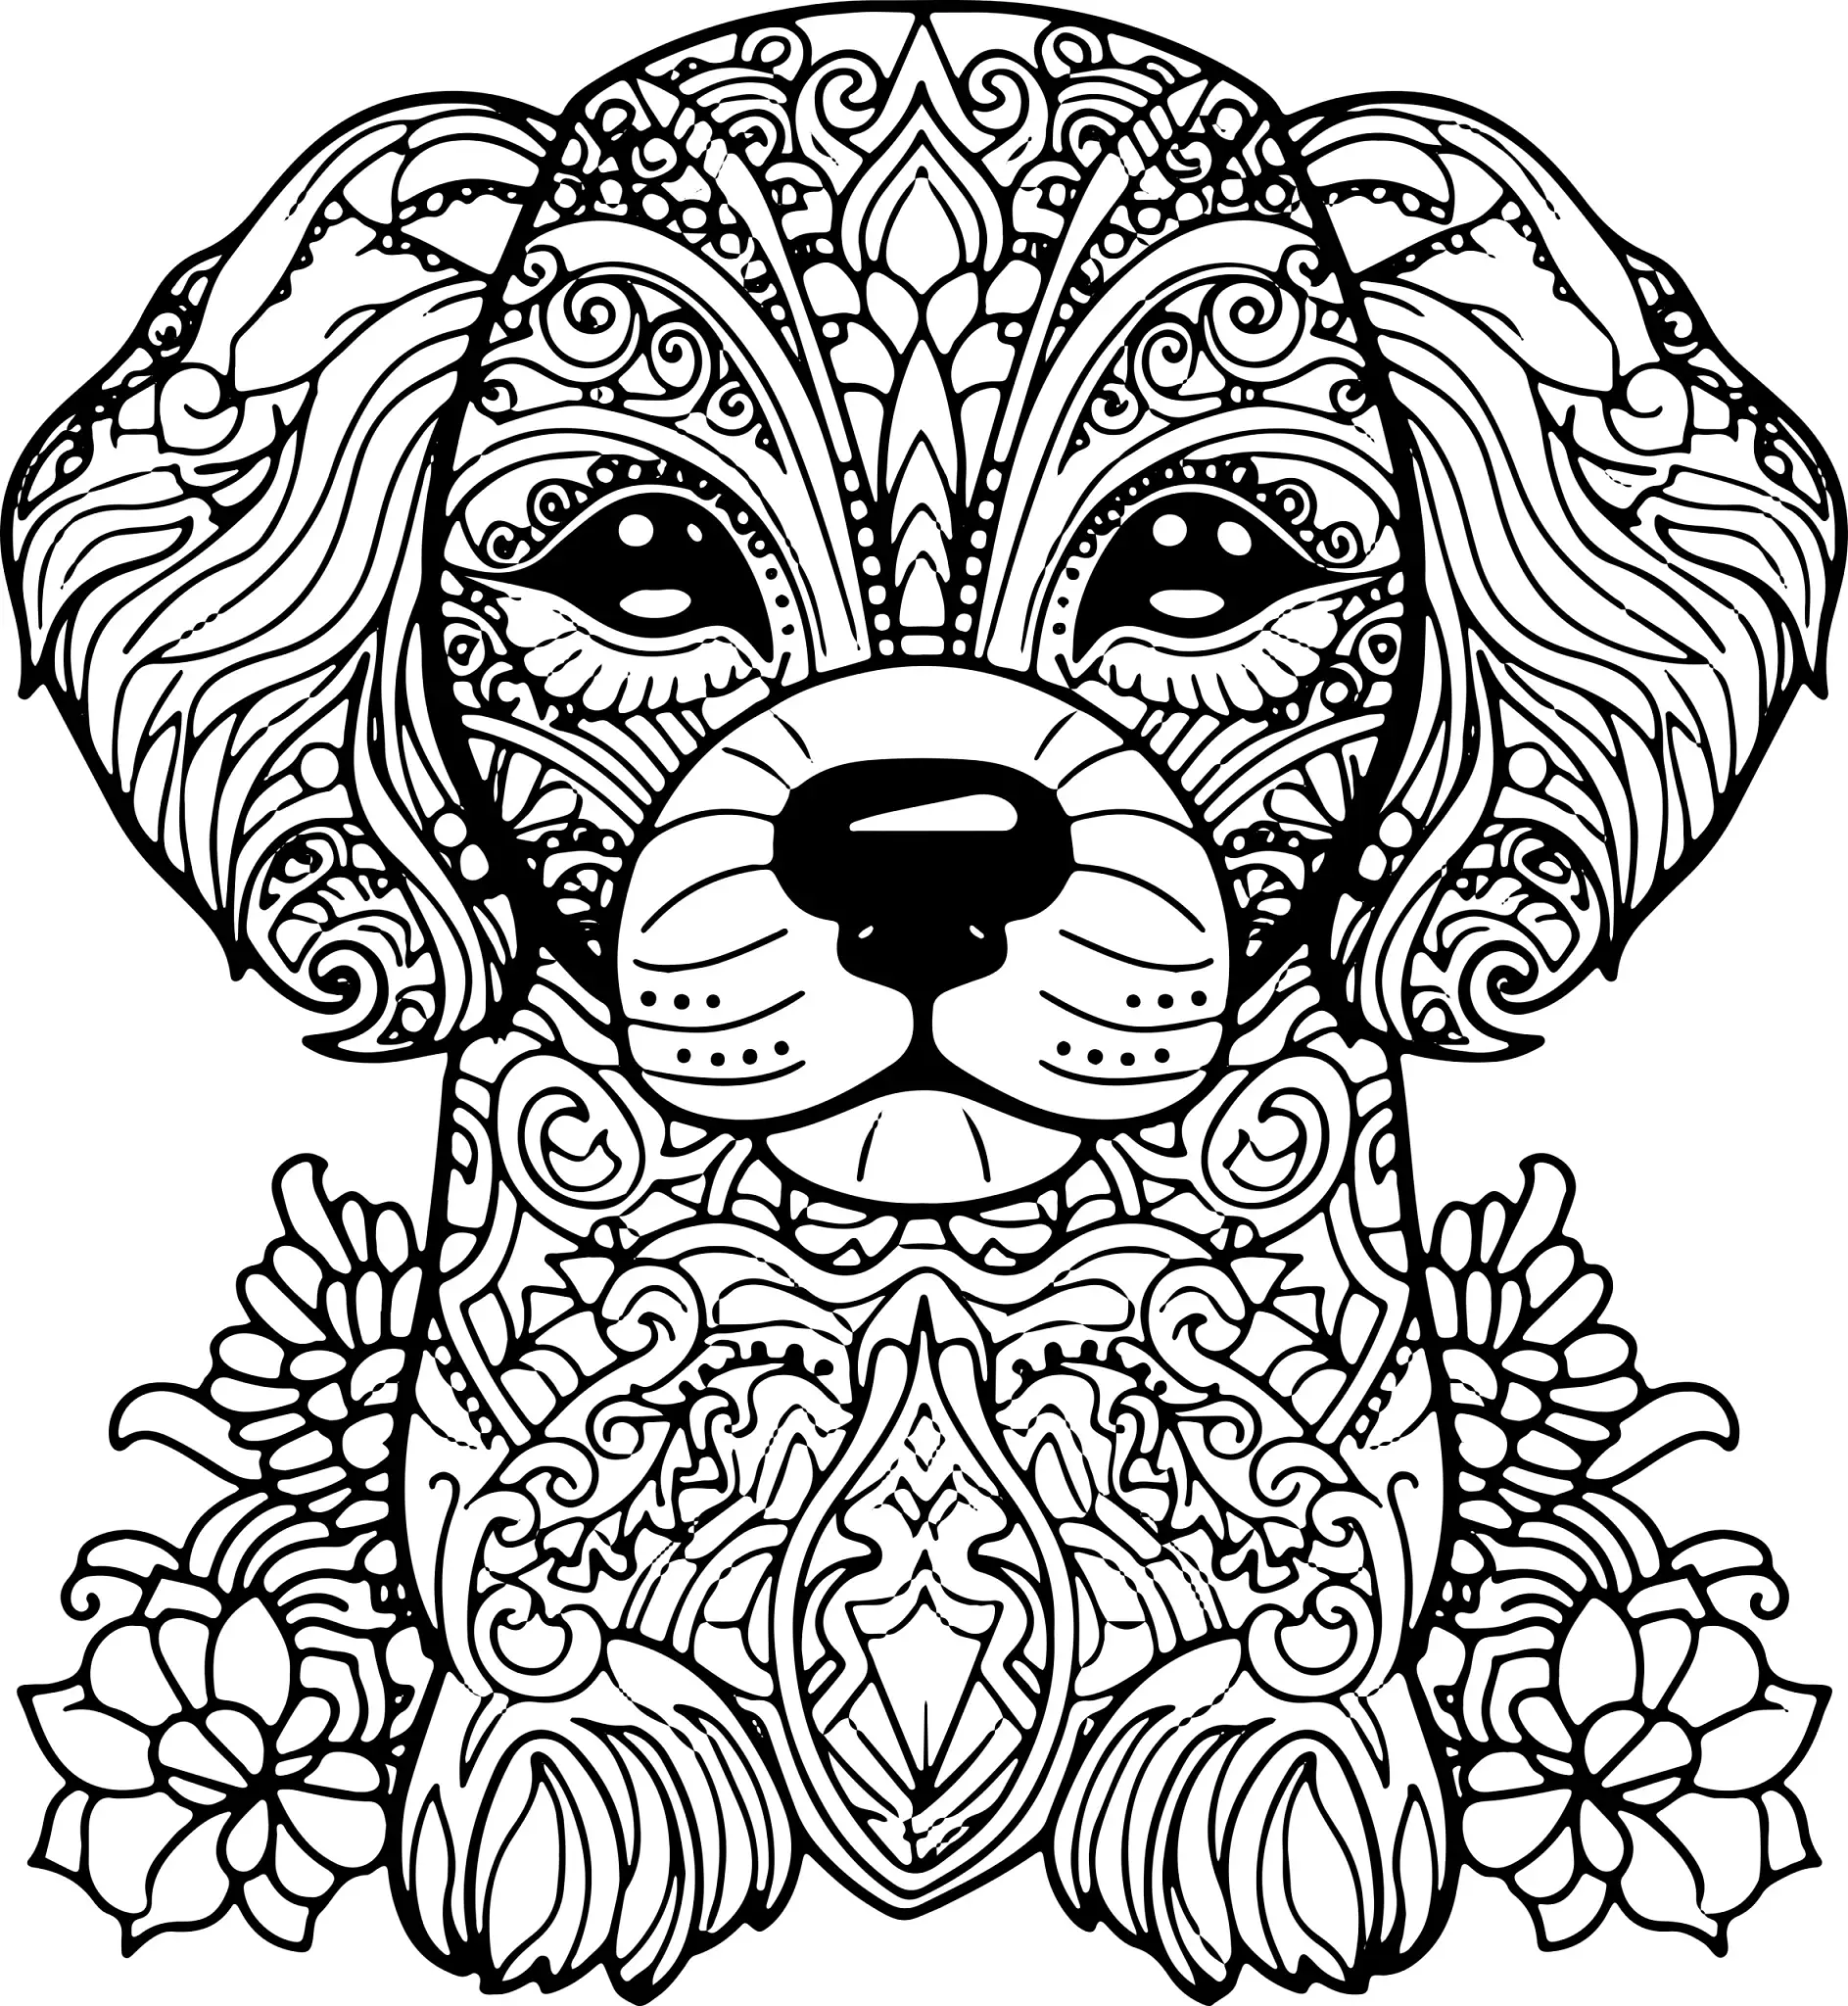 Ausmalbild Mandala mit Hund und aufwendigen floralen Mustern und Details